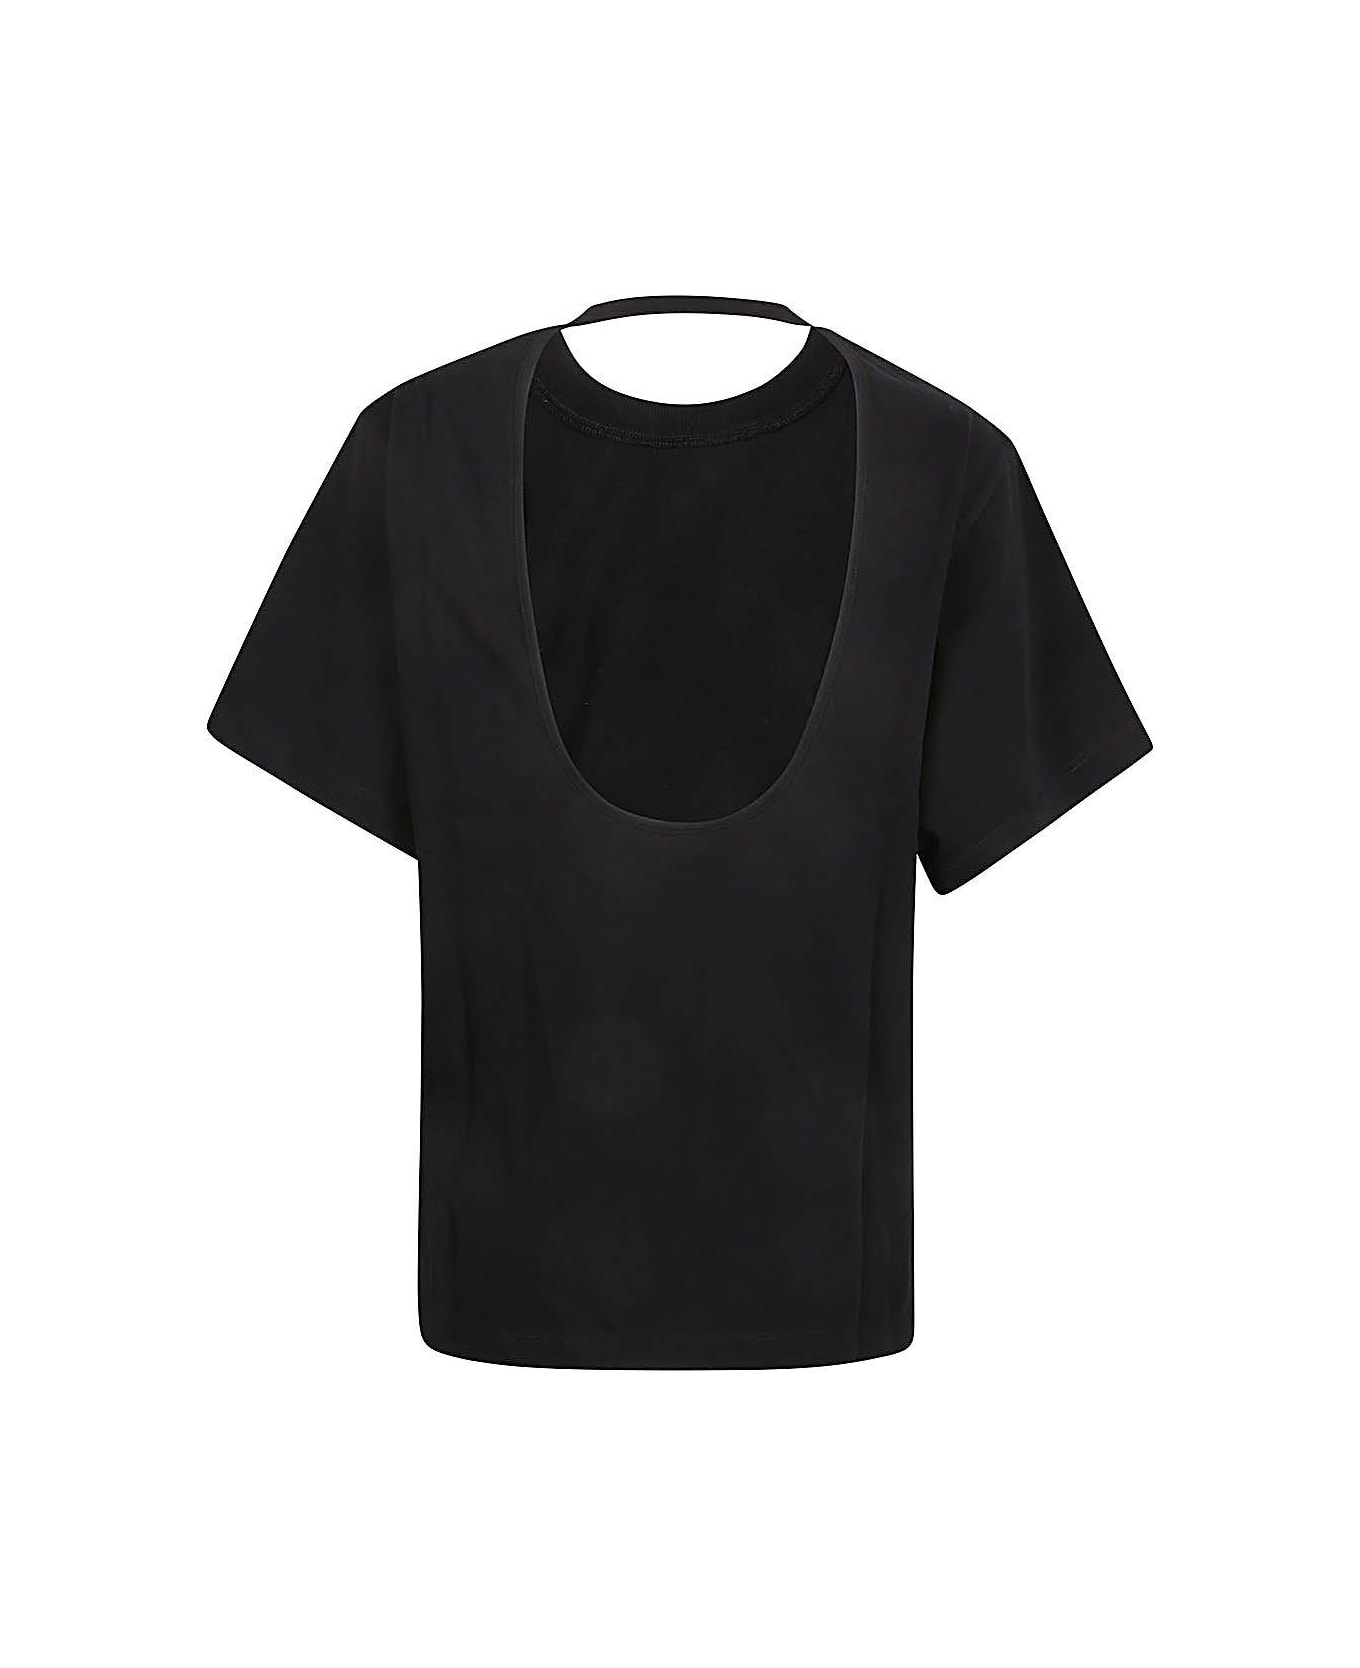 IRO Open Back Short-sleeved Top - Black Tシャツ